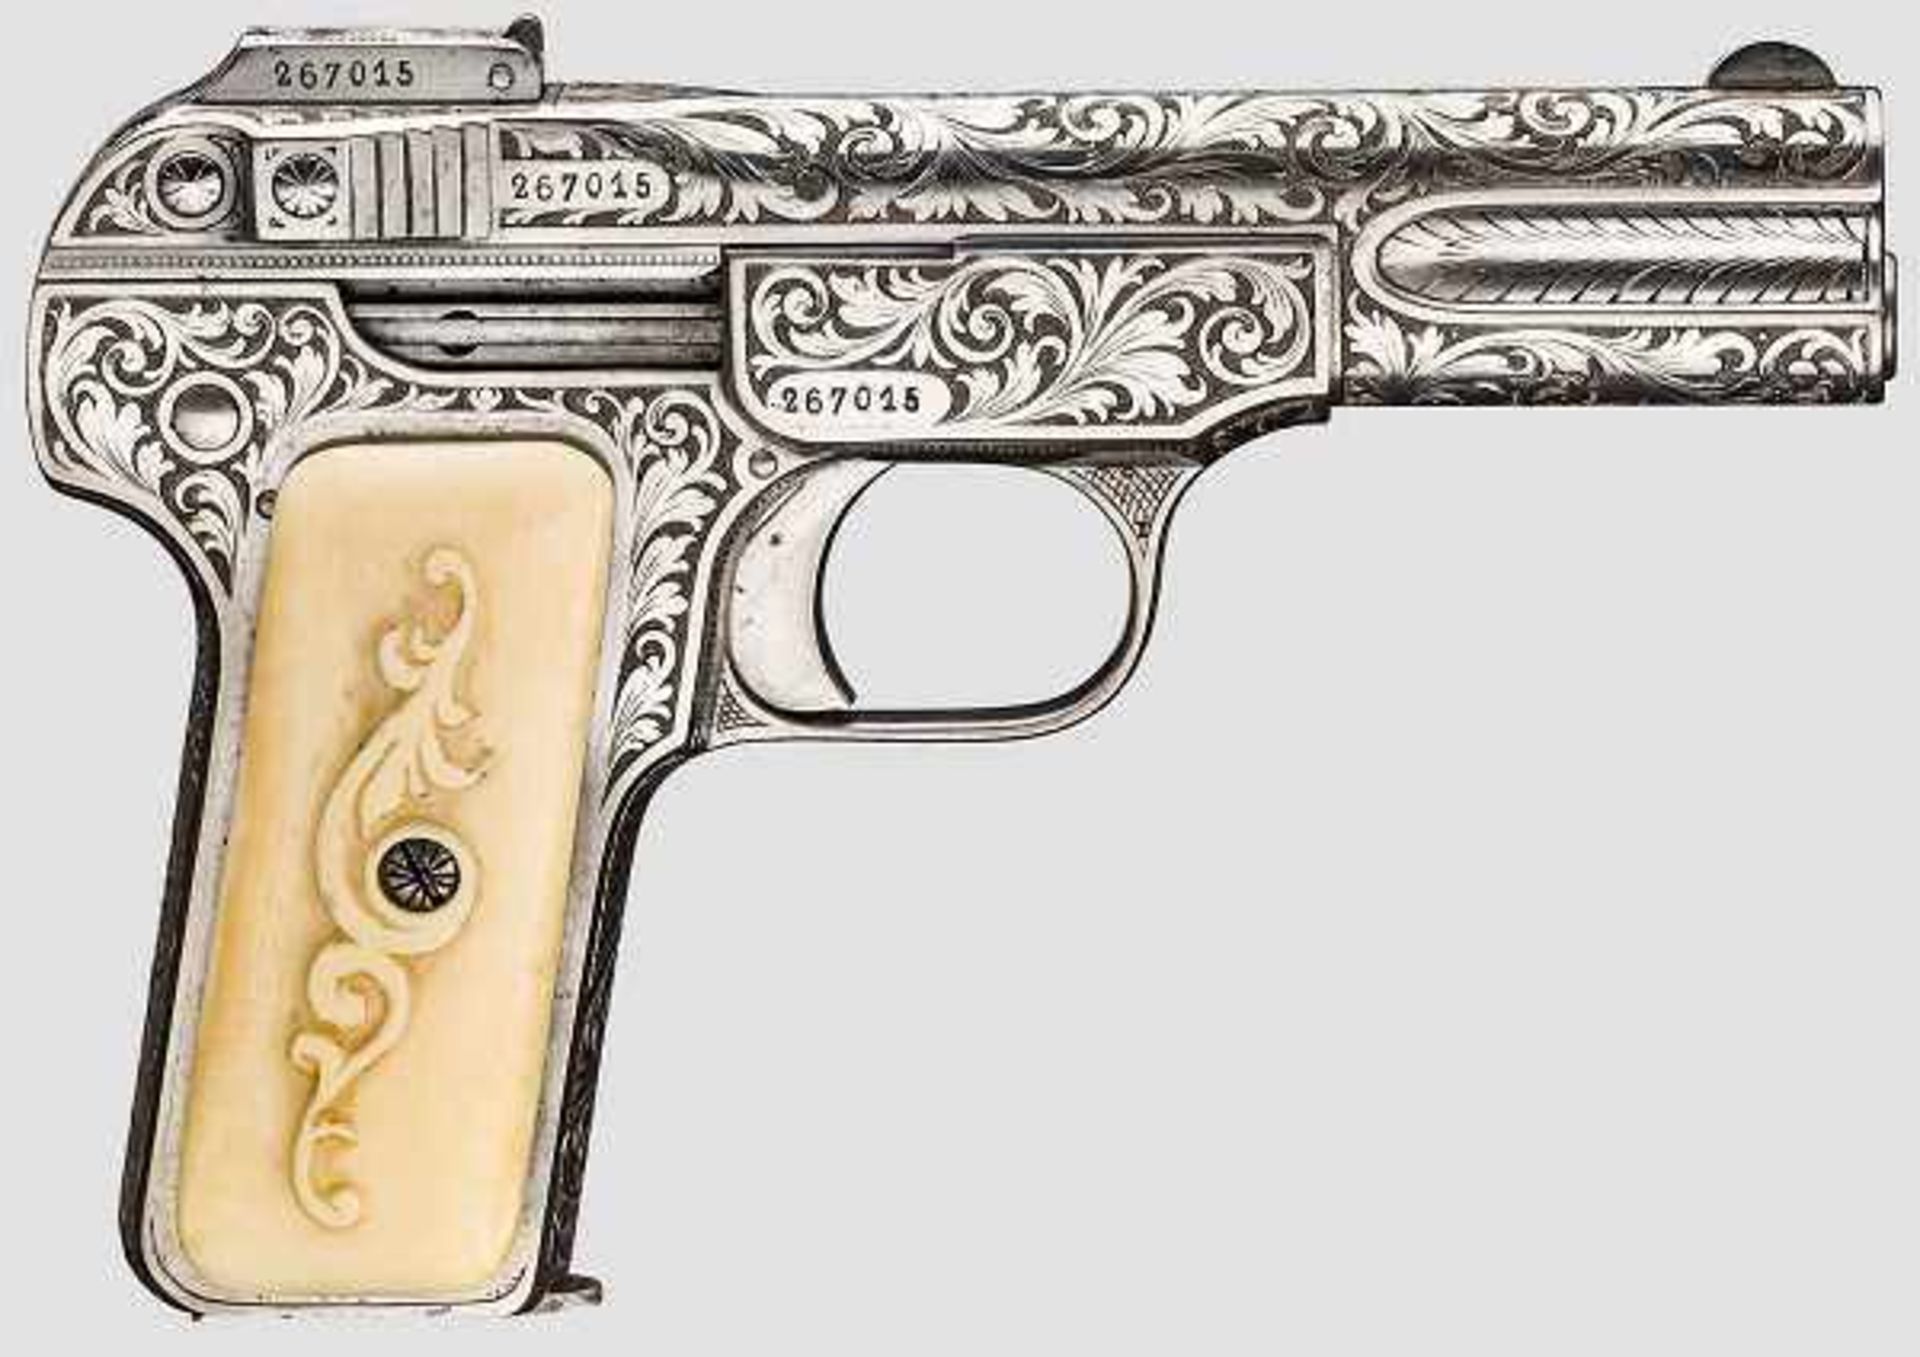 FN Mod. 1900, graviert Kal. 7,65 mm Browning, Nr. 267015, nummerngleich, blanker Lauf, belgischer - Bild 2 aus 2